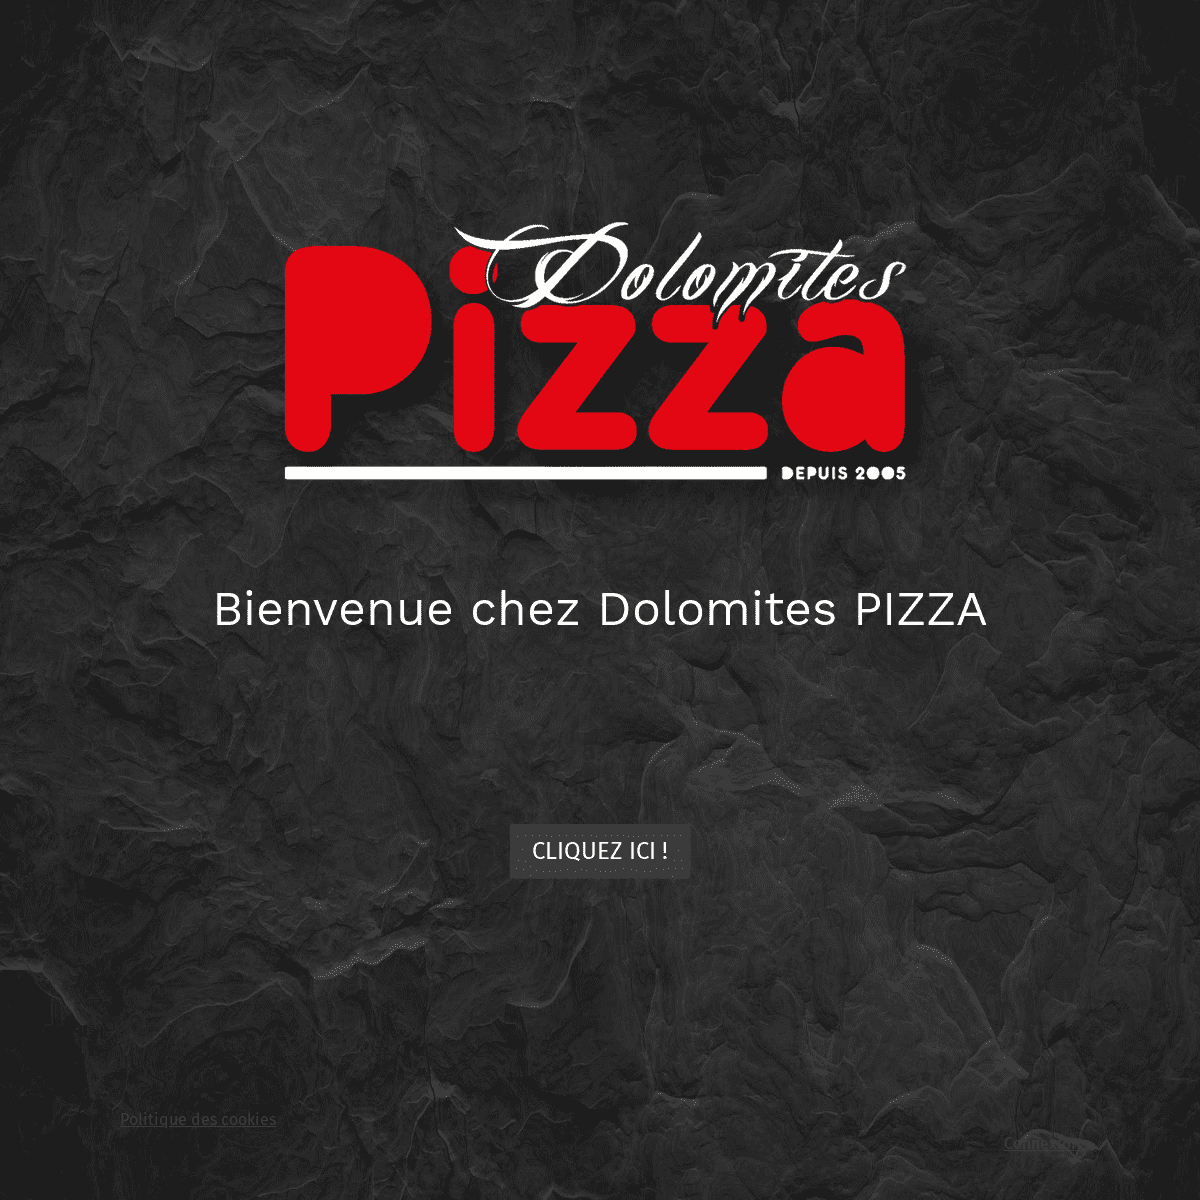 Dolomites Pizza - Pizzeria artisanale au 23 cours de la Martinique à Bordeaux - Dolomites Pizza